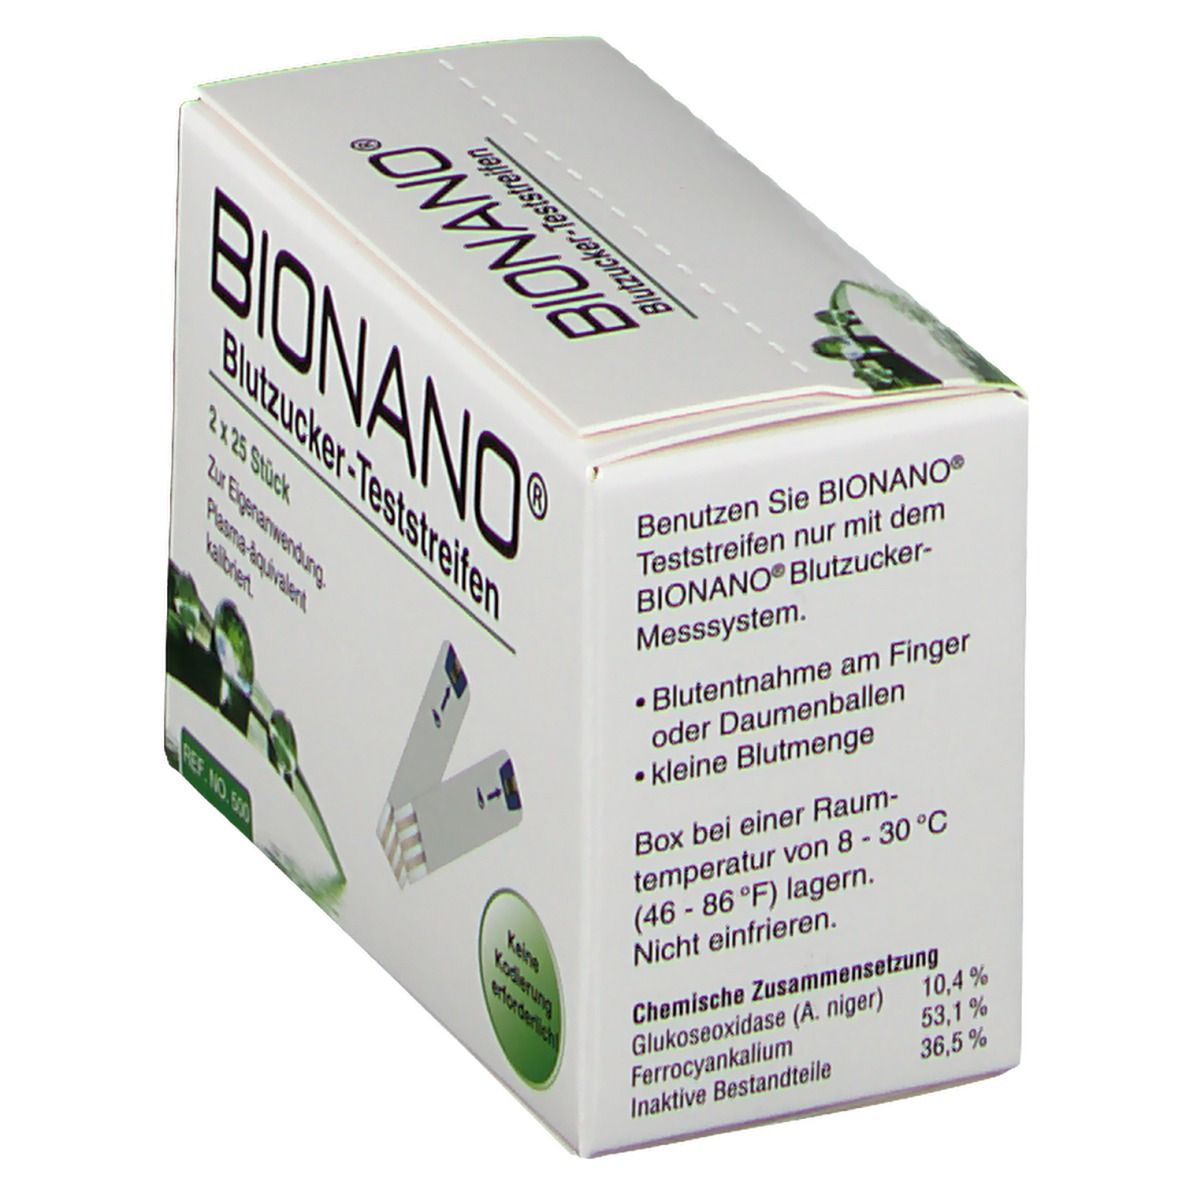 BIONANO® Blutzucker-Teststreifen